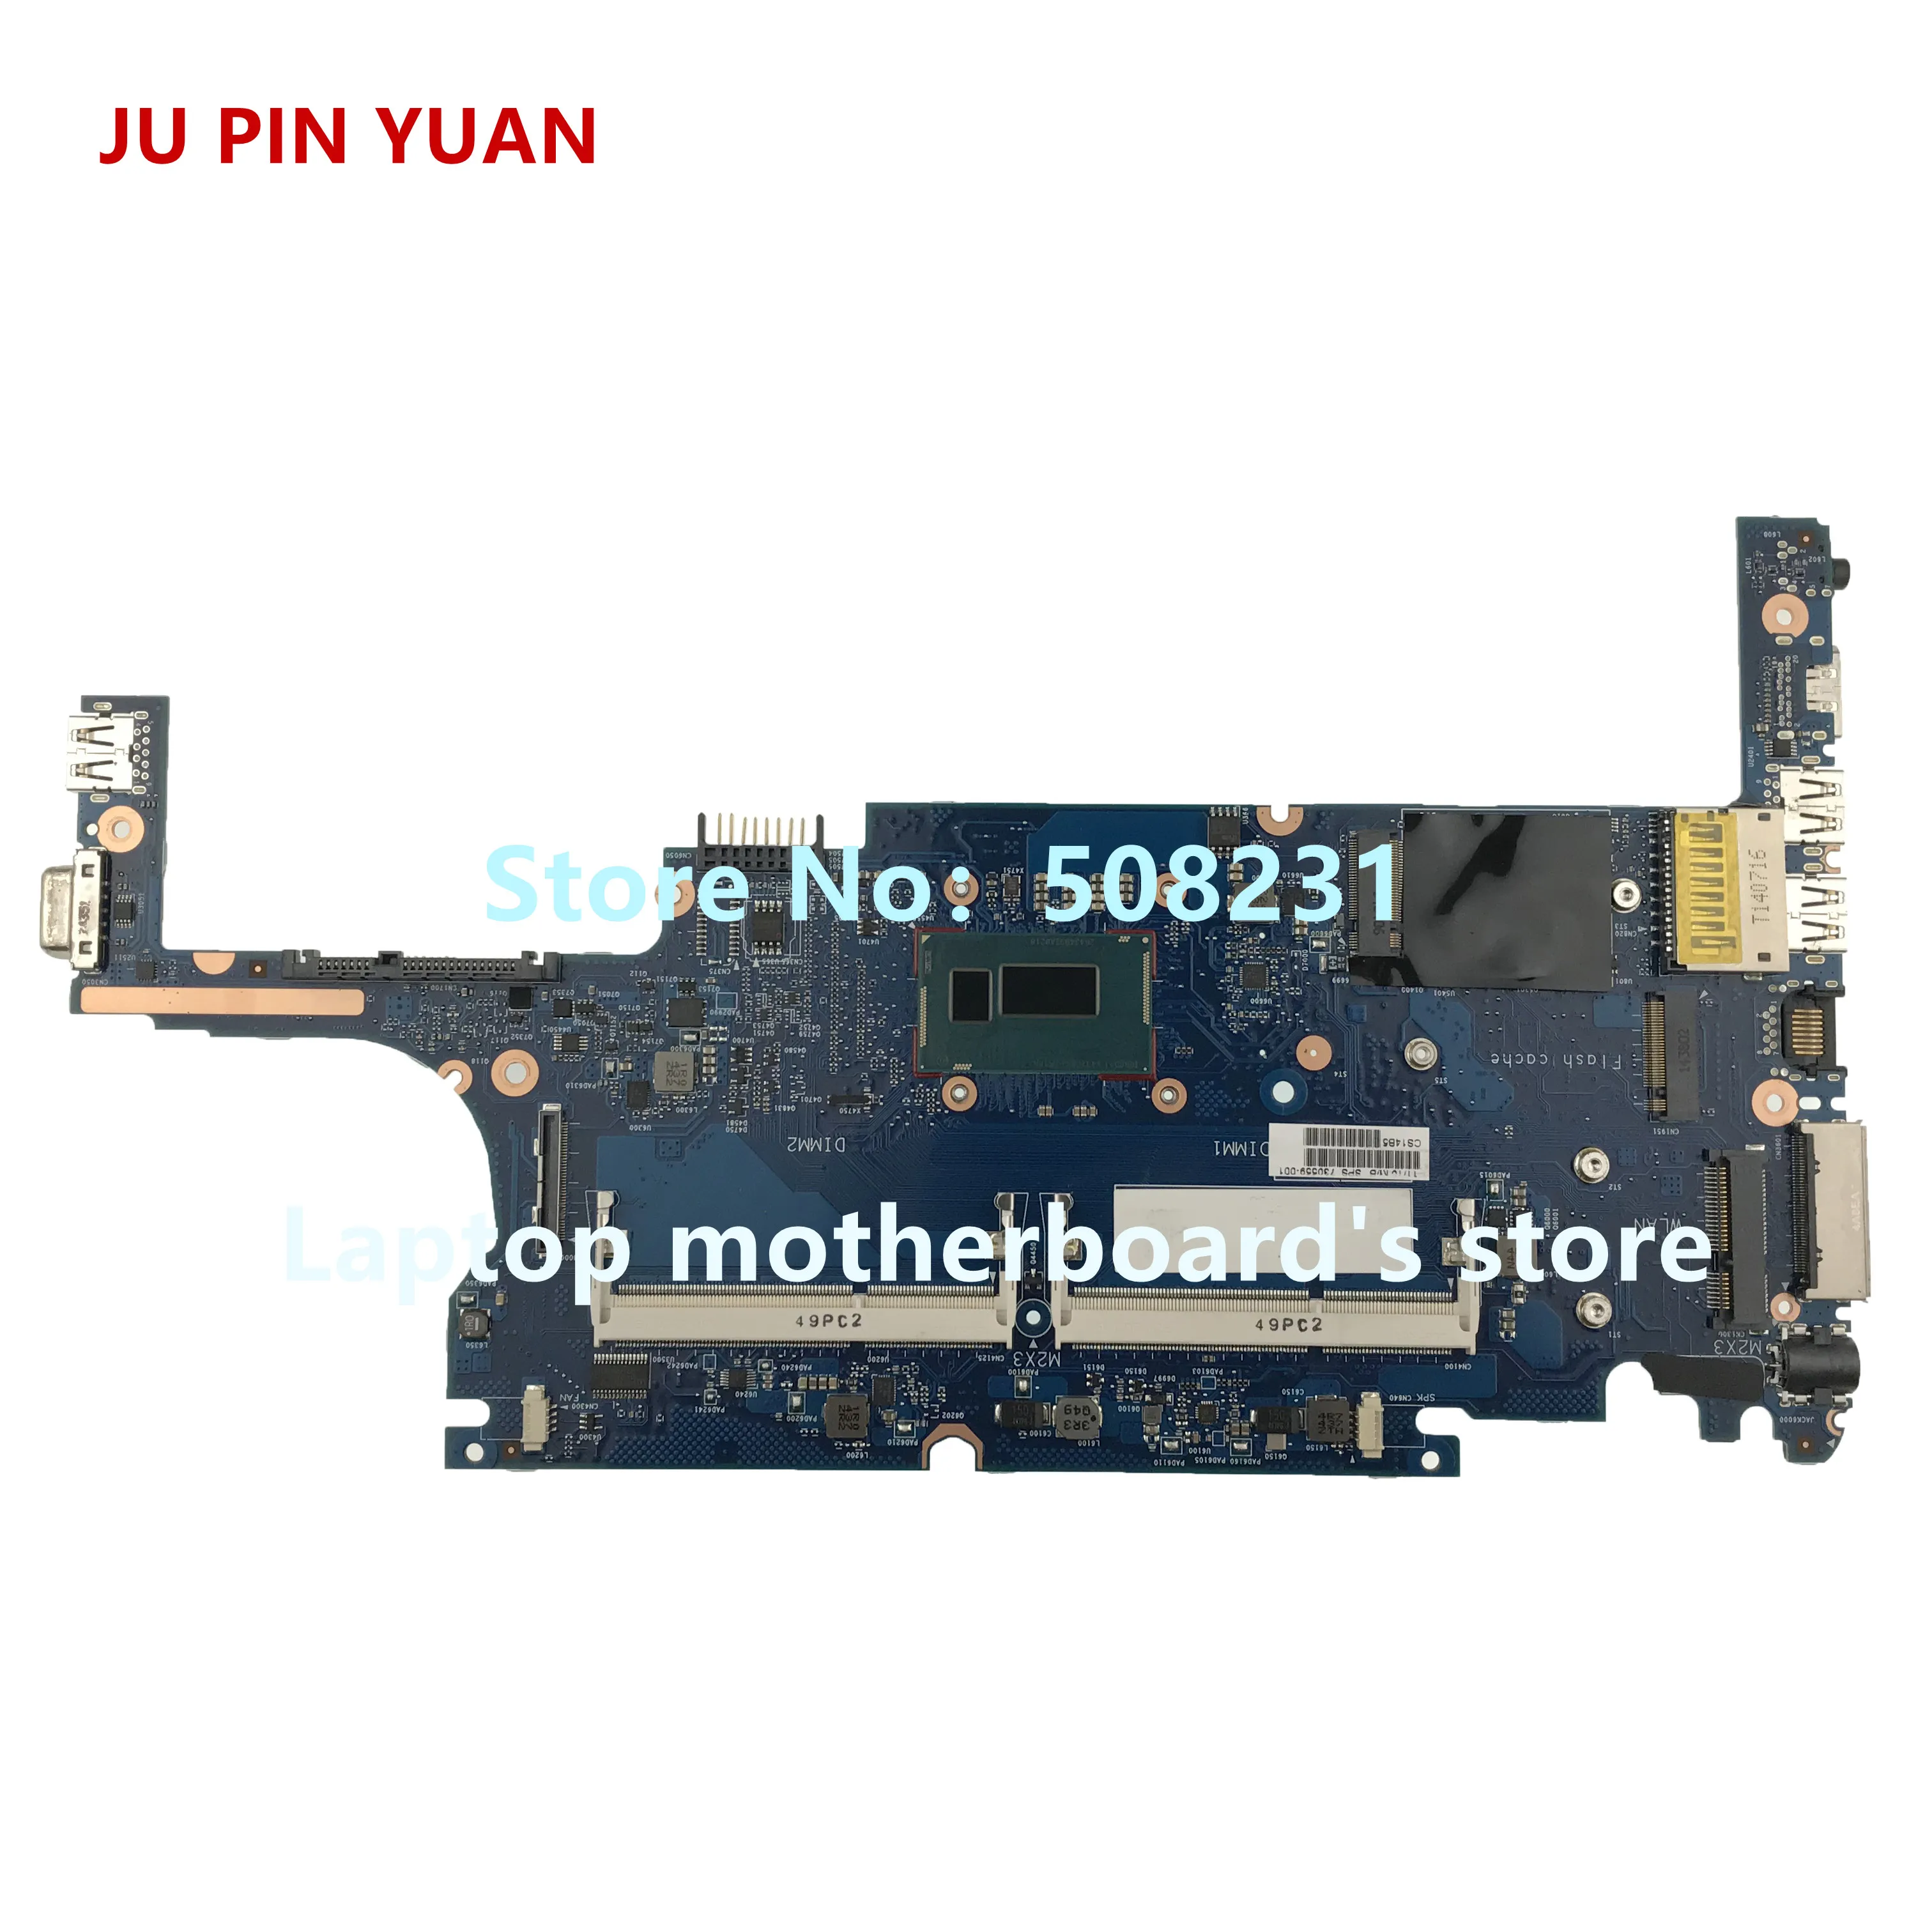 JU PIN юаней за hp 820 G1 Материнская плата ноутбука 730559-001 730559-501 730559-601 с i7-4600U 100% полностью протестированы